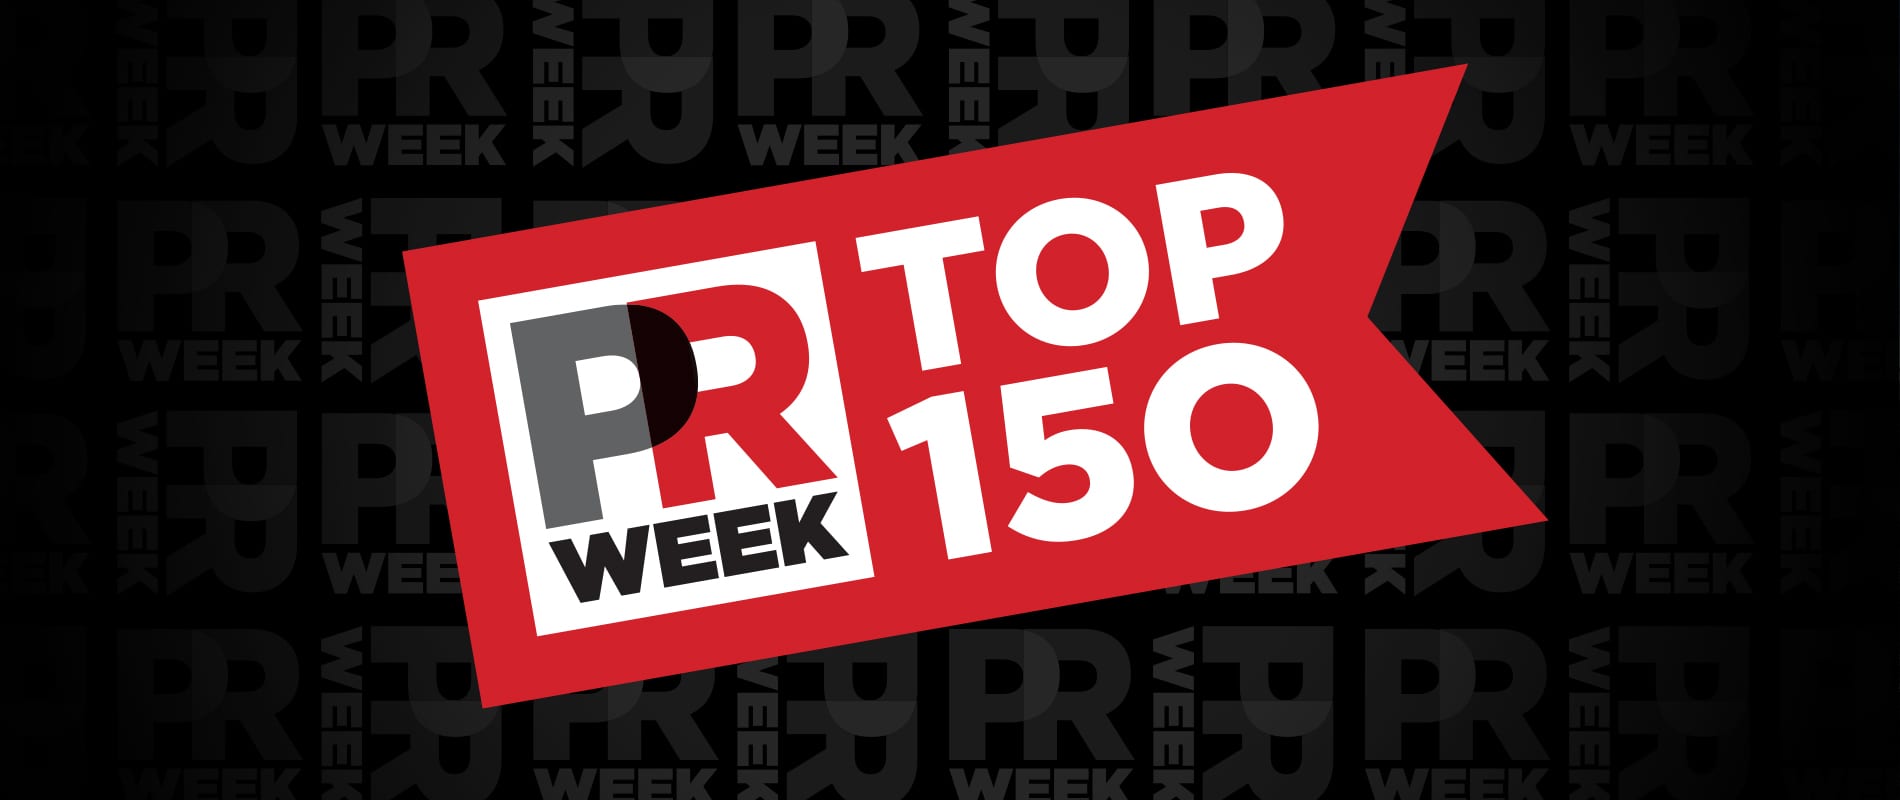 PR Week Top 150 banner